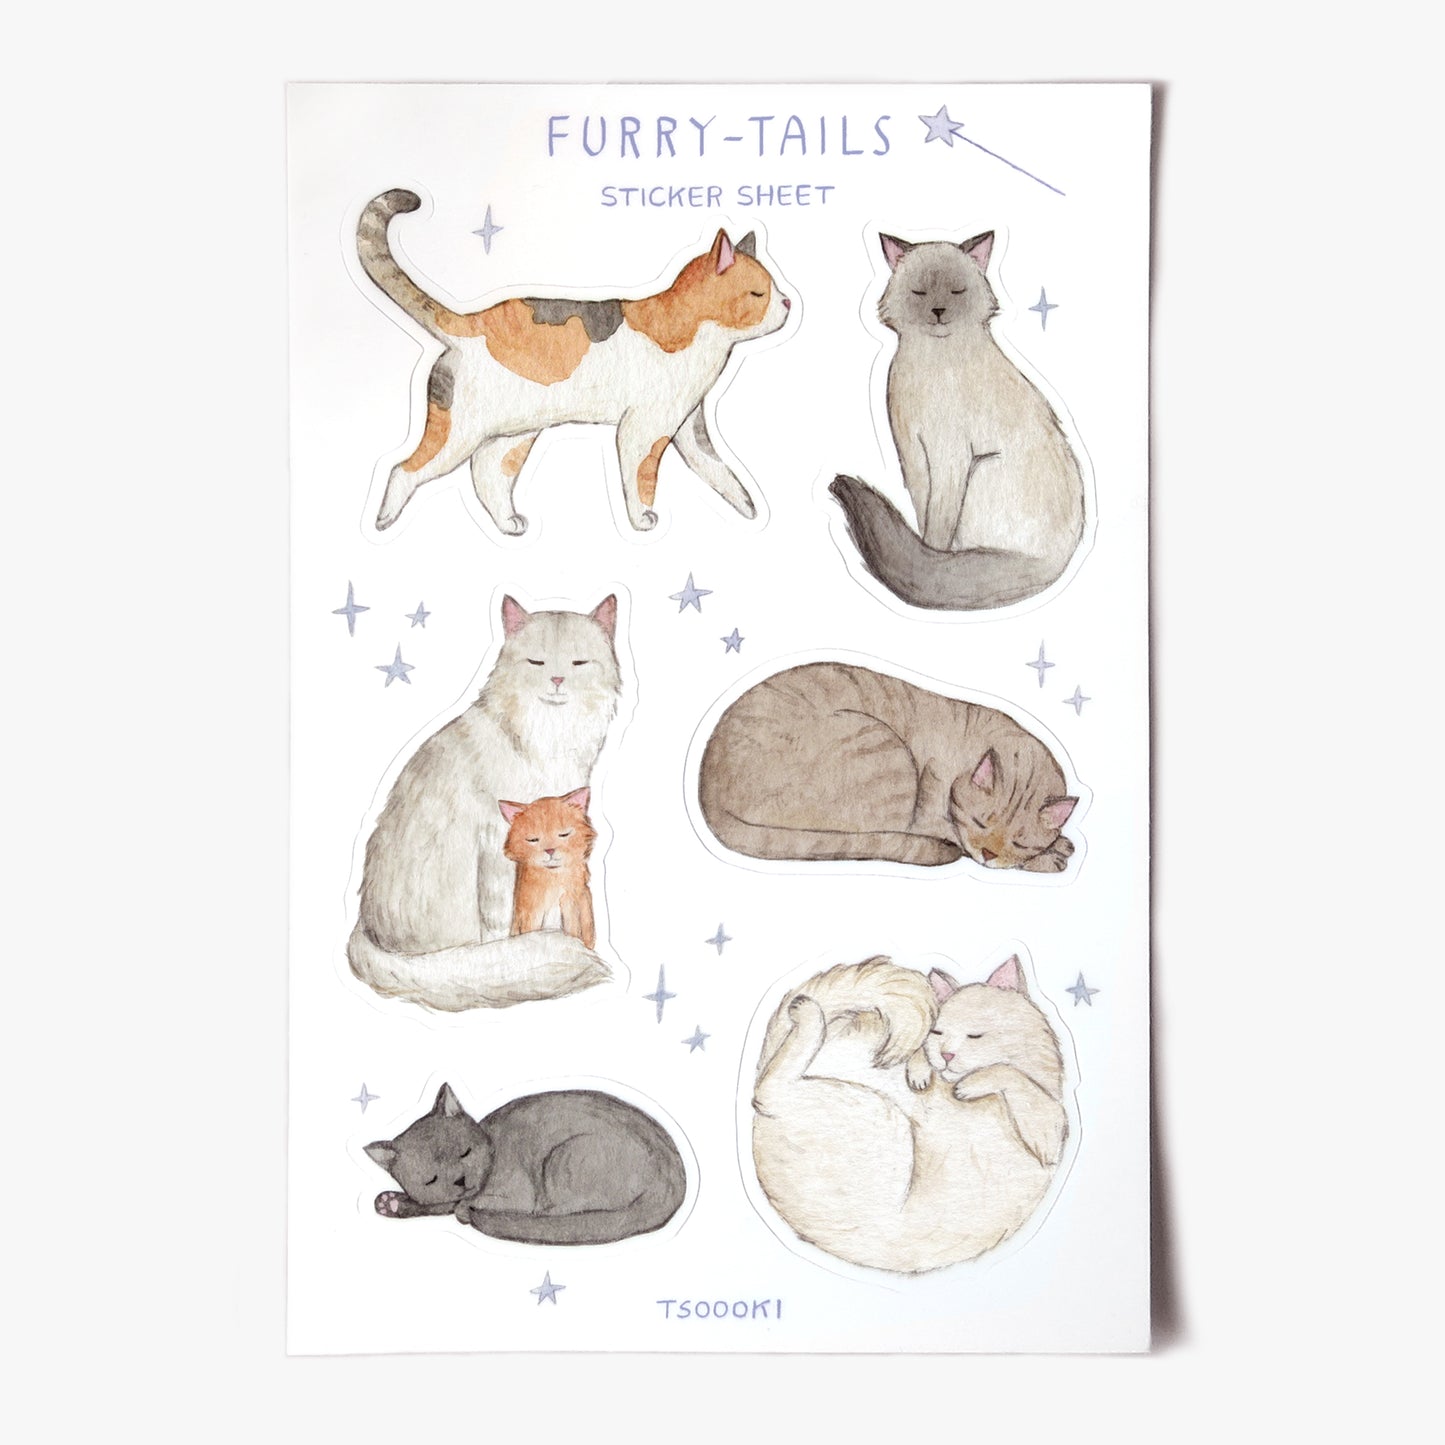 Furry-Tails Sticker Sheet